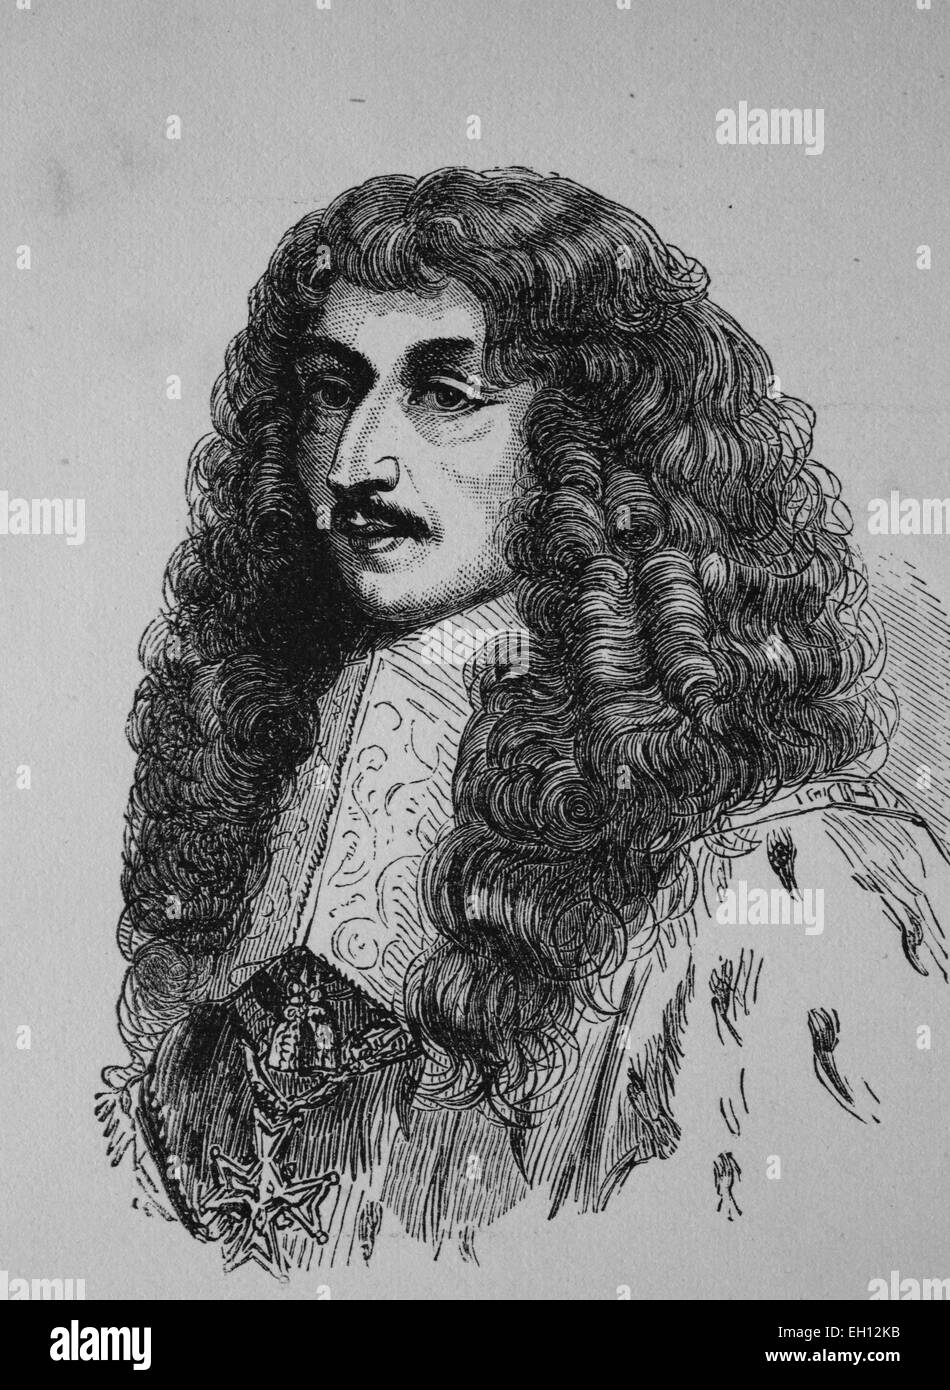 Louis II de Bourbon, prince de Condé, 1621 - 1686, l'un des plus importants généraux de la 17e siècle gravure sur bois de 1880 Banque D'Images